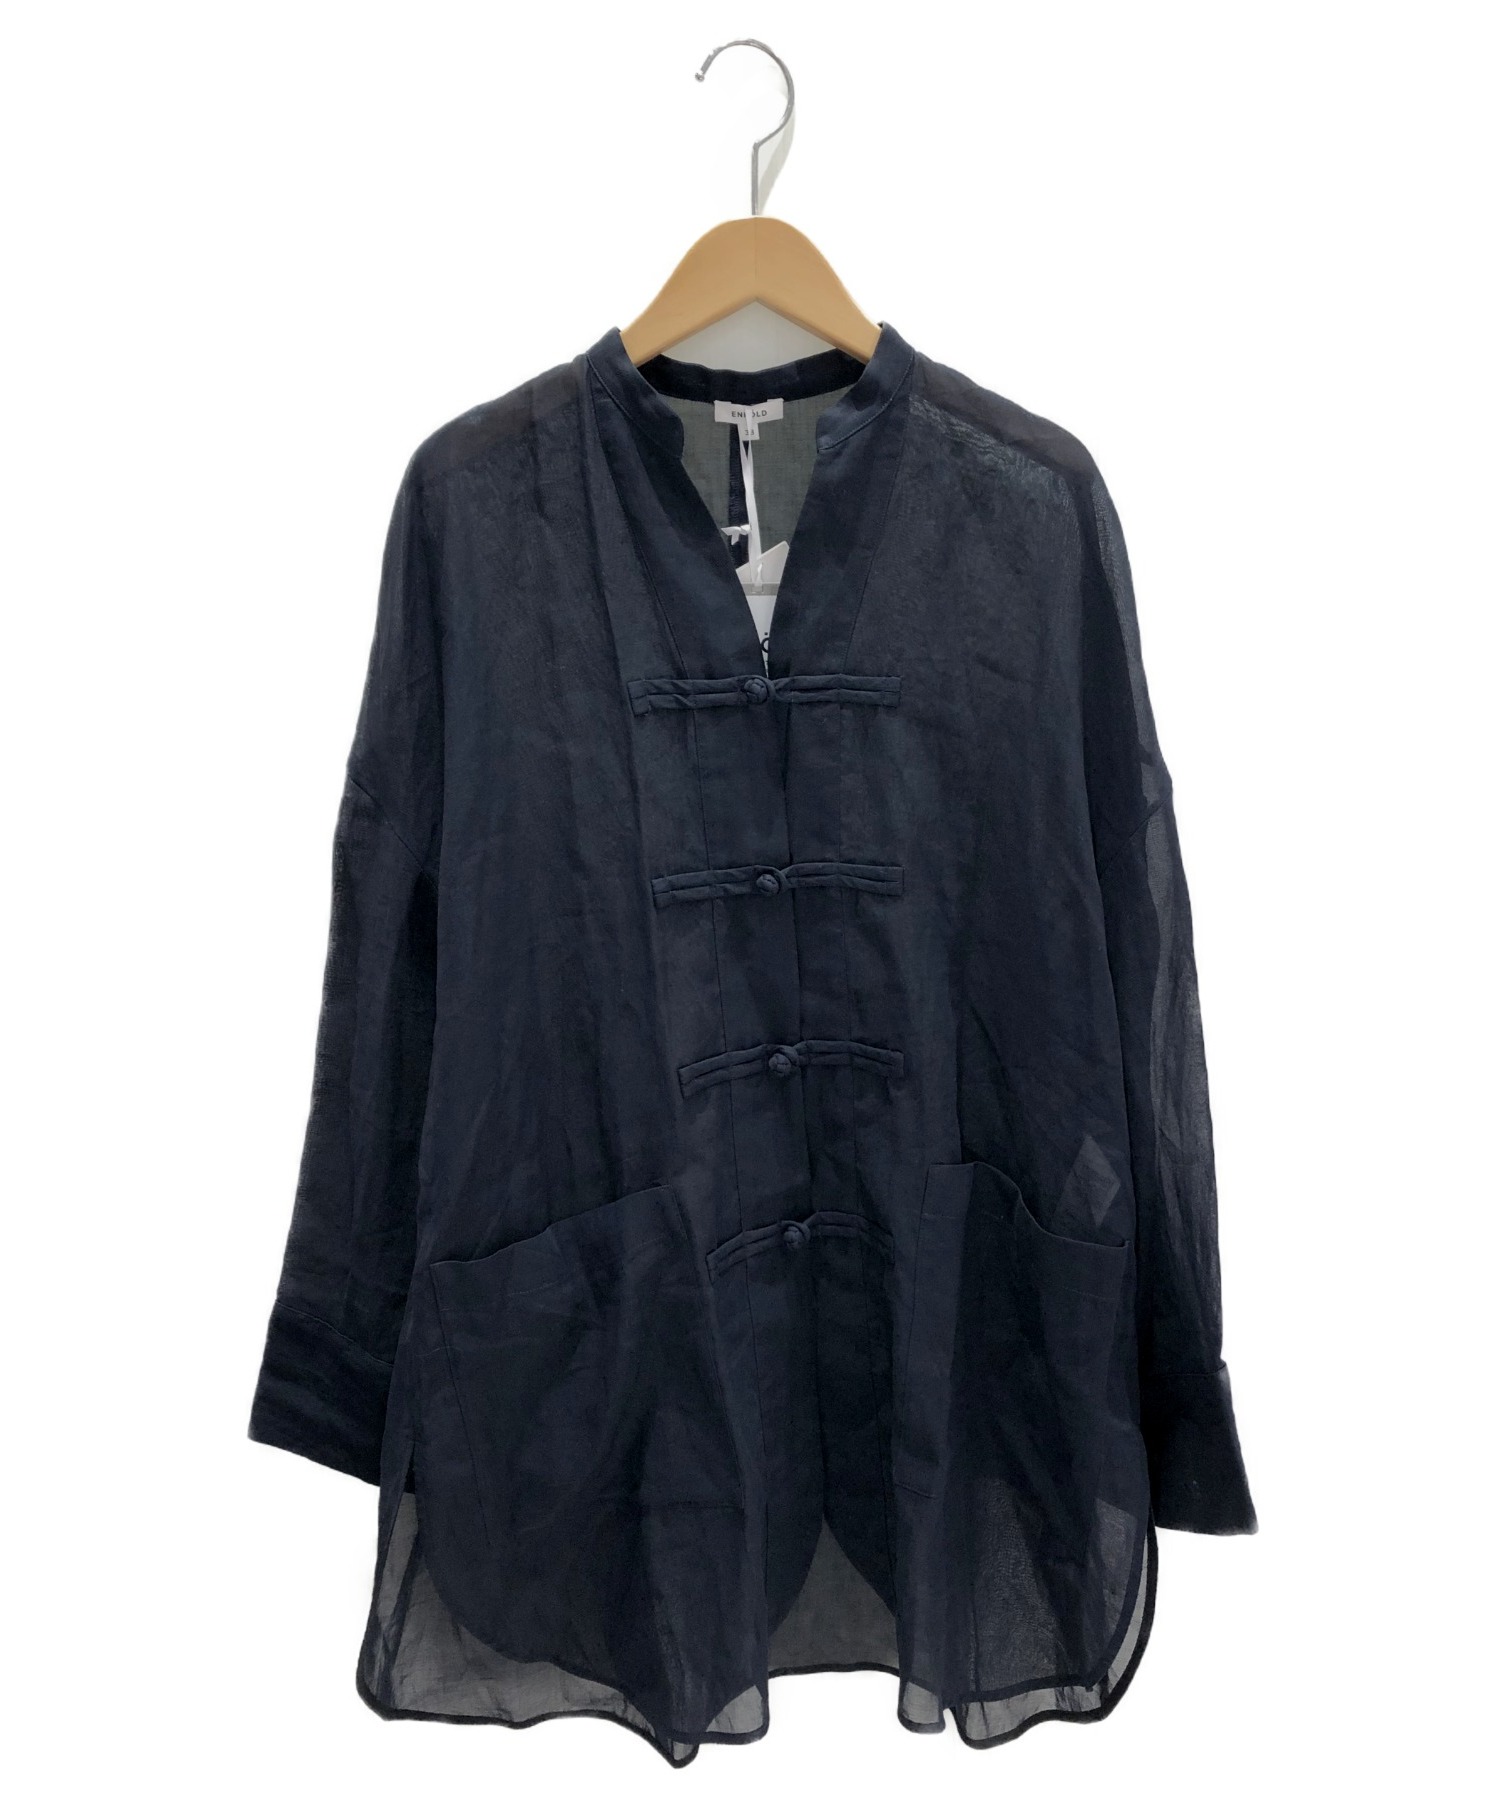 ENFOLD (エンフォルド) チャイナシャツジャケット ダークネイビー サイズ:38 未使用品